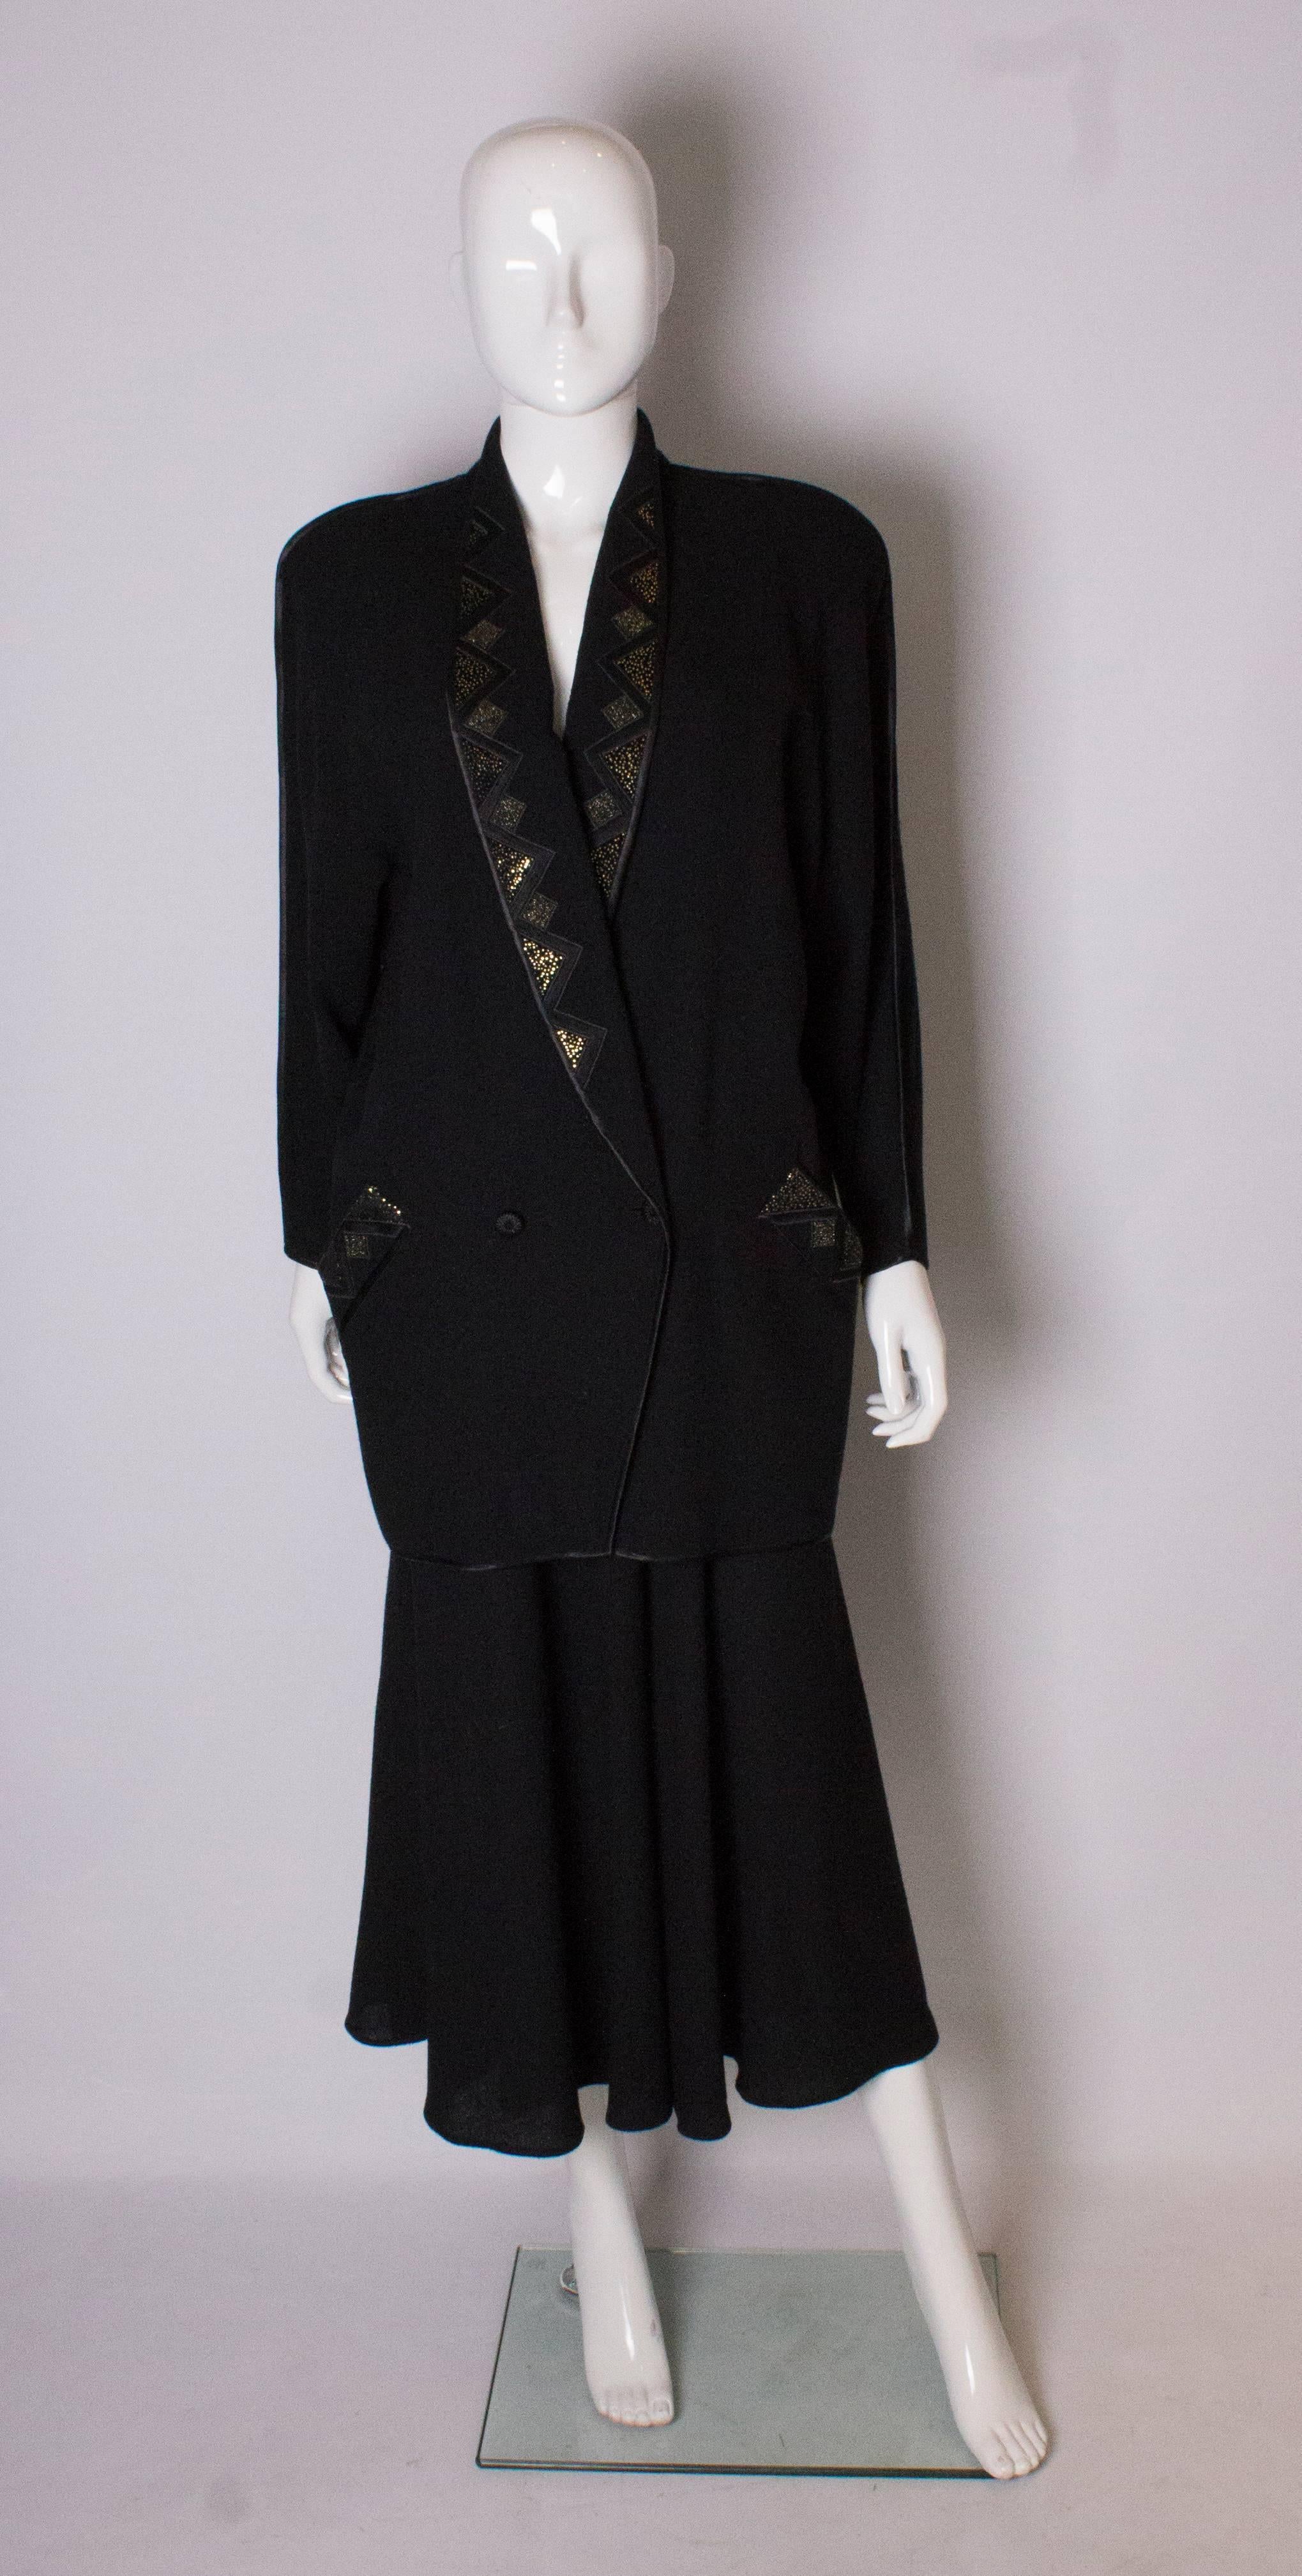 Un tailleur jupe vintage chic par Janice Wainwright. La veste a une profonde encolure en V, avec un col châle et des détails sur les revers.  Il est doté d'une fermeture à deux boutons, de deux poches obliques et d'une bordure en ruban sur les